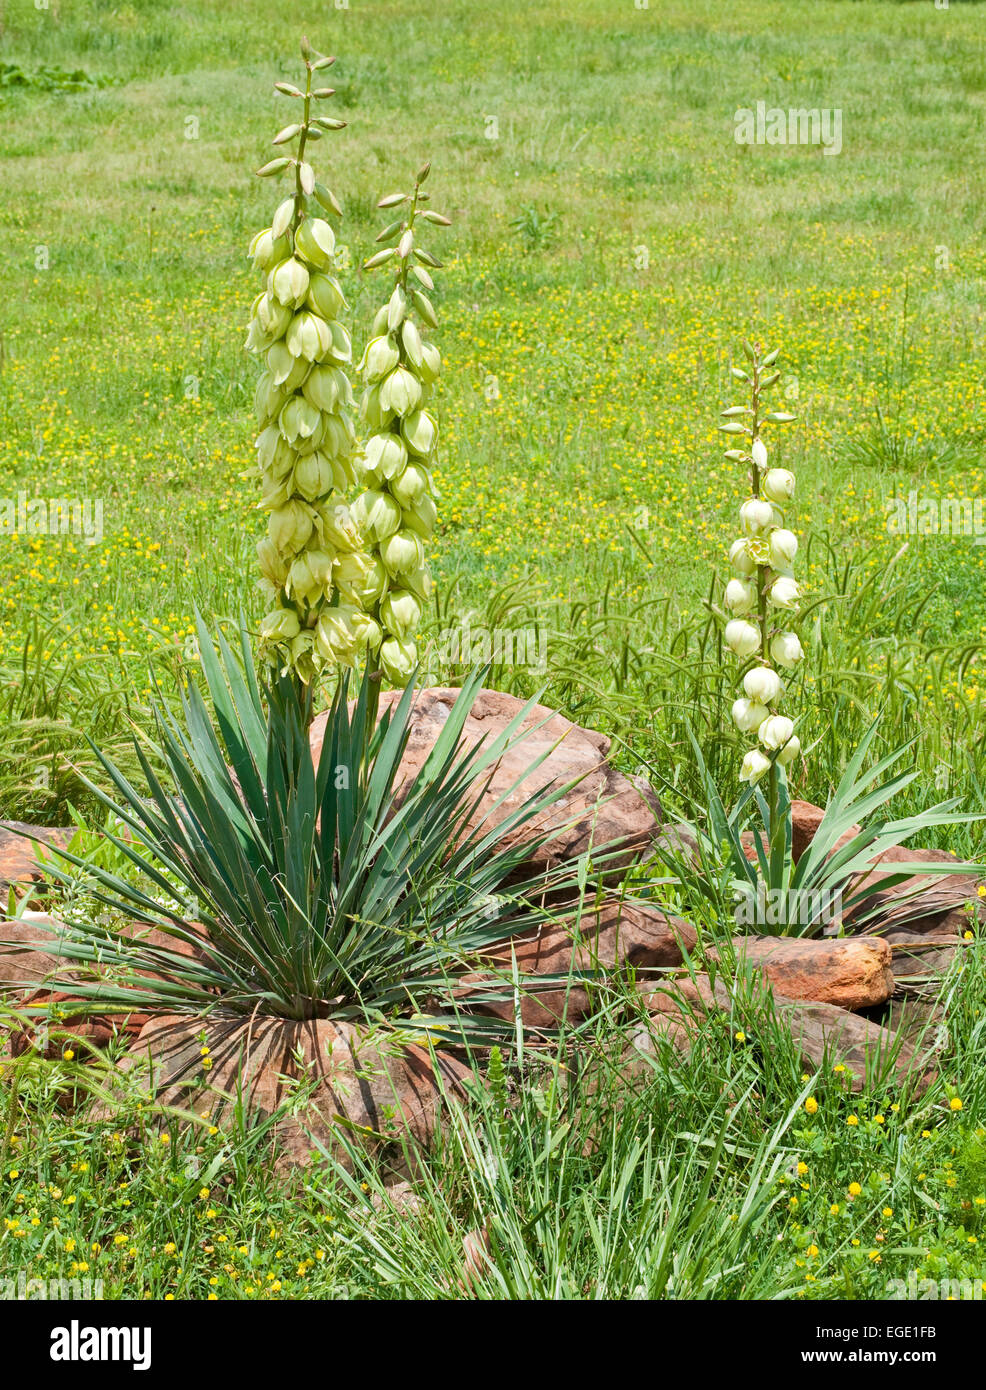 La floraison du yucca plaines avec de grandes fleurs en forme de cloche dans un petit jardin de roche Banque D'Images